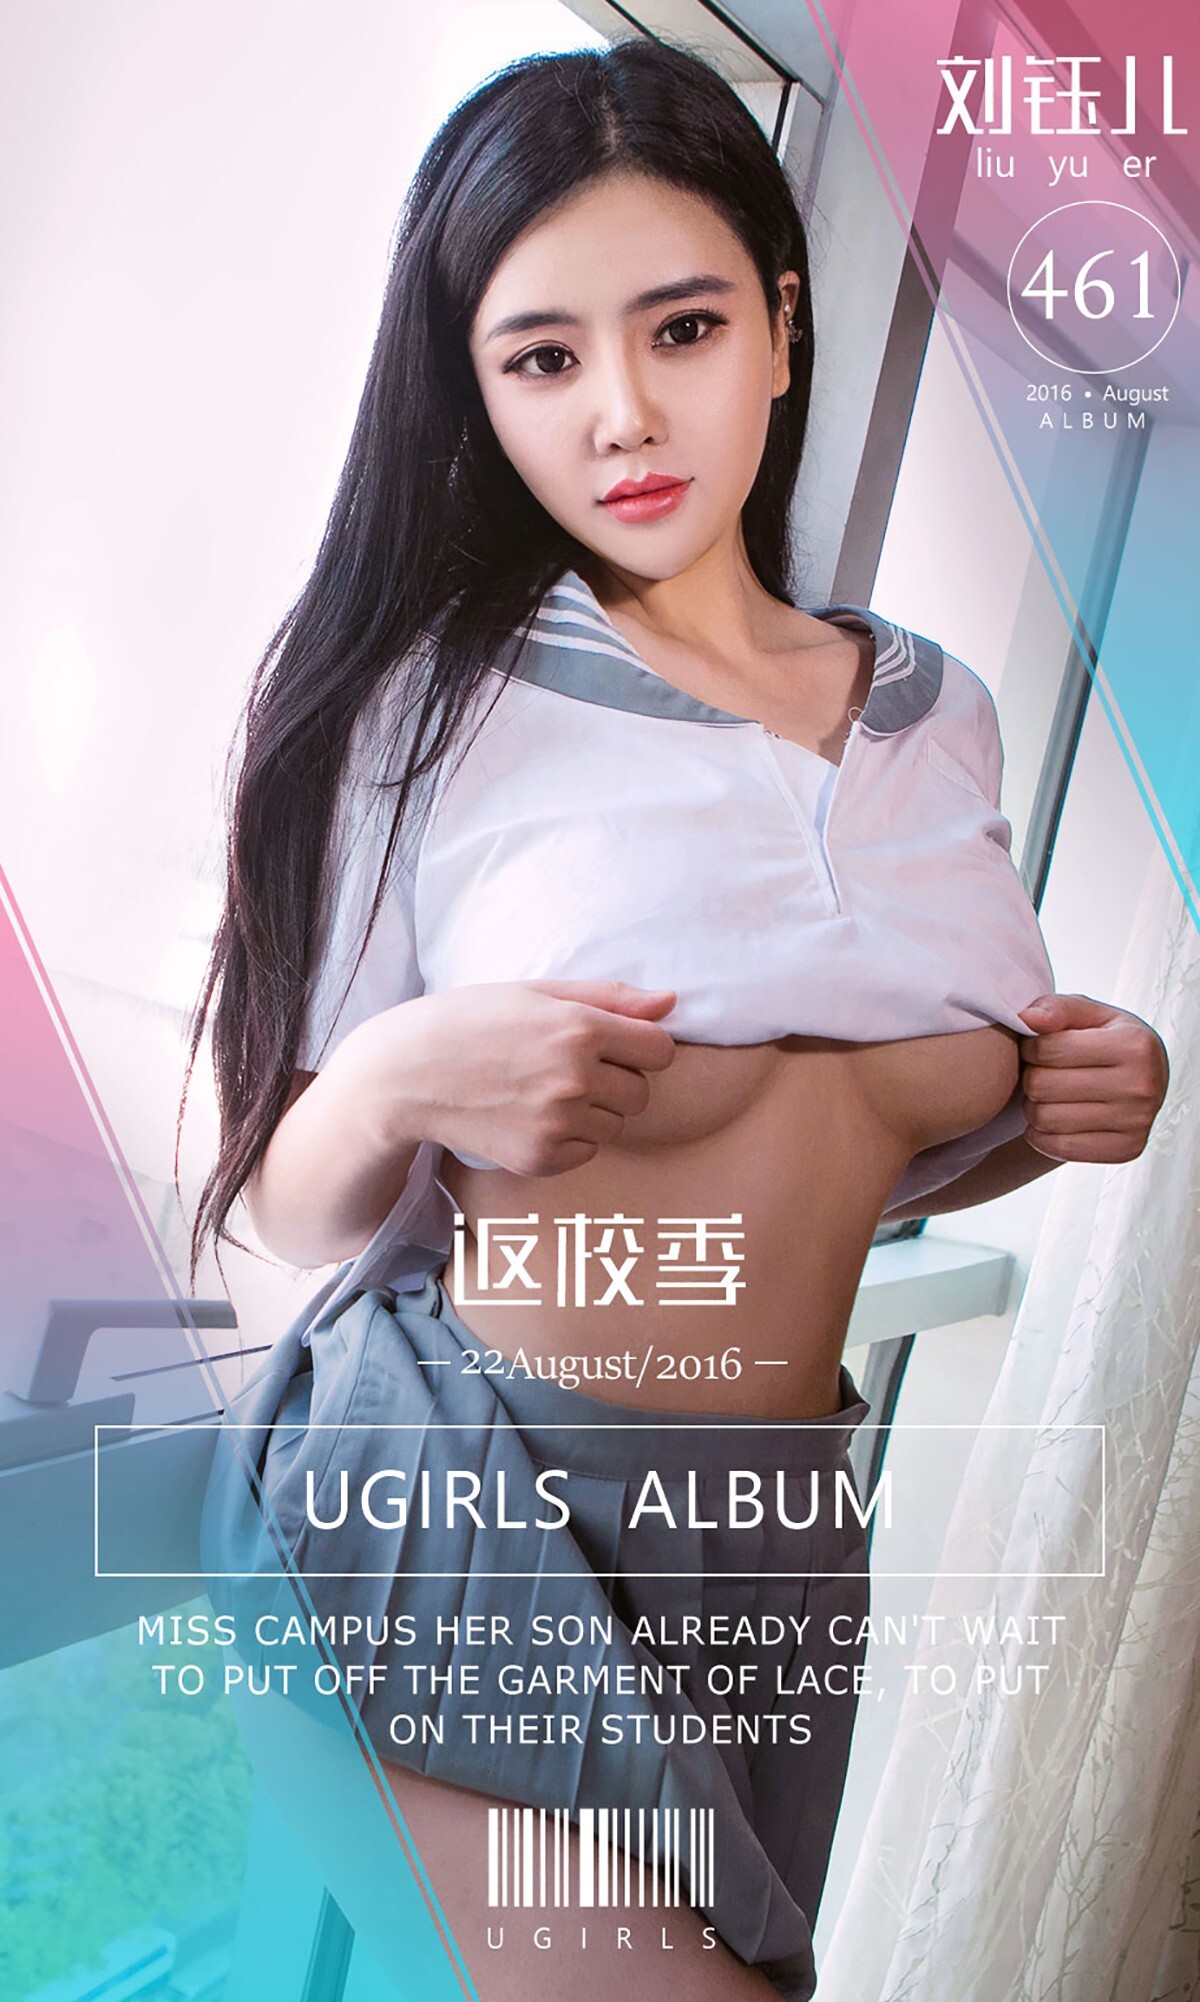 [ugirls Youguo] love Youwu album 2016.08.22 No.461 back to school season Liu yu'er